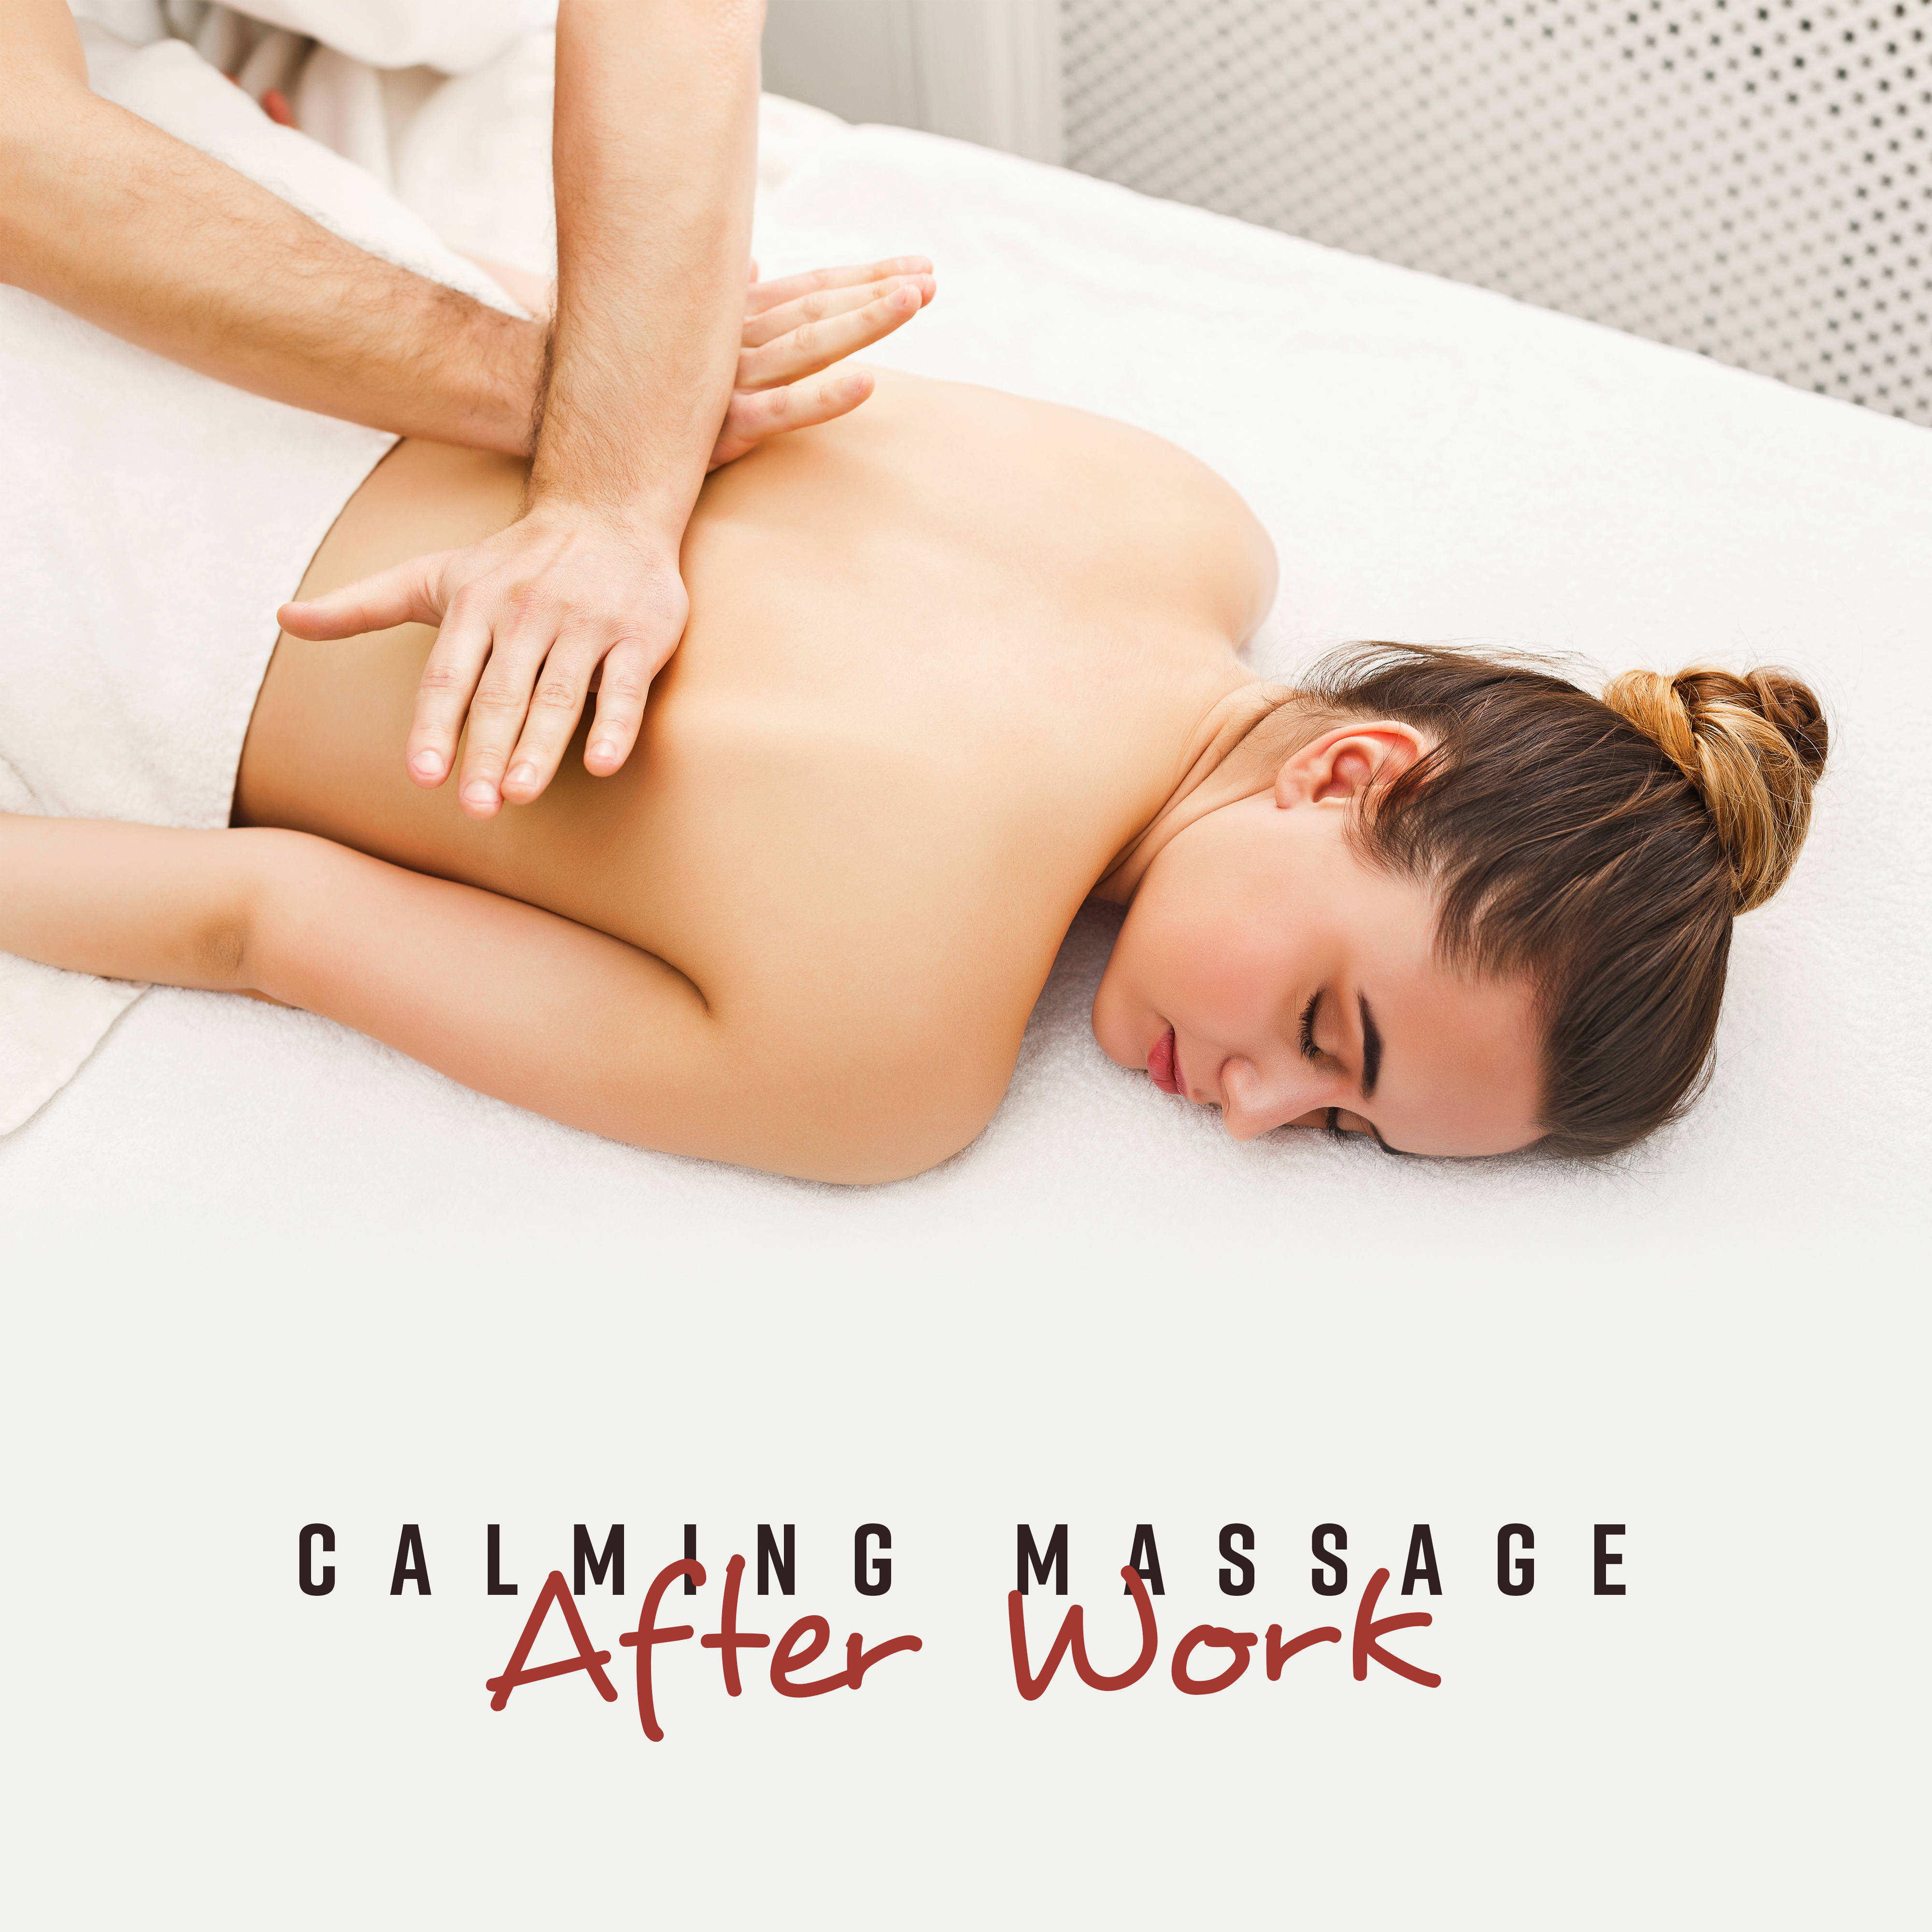 Calming Massage After Work